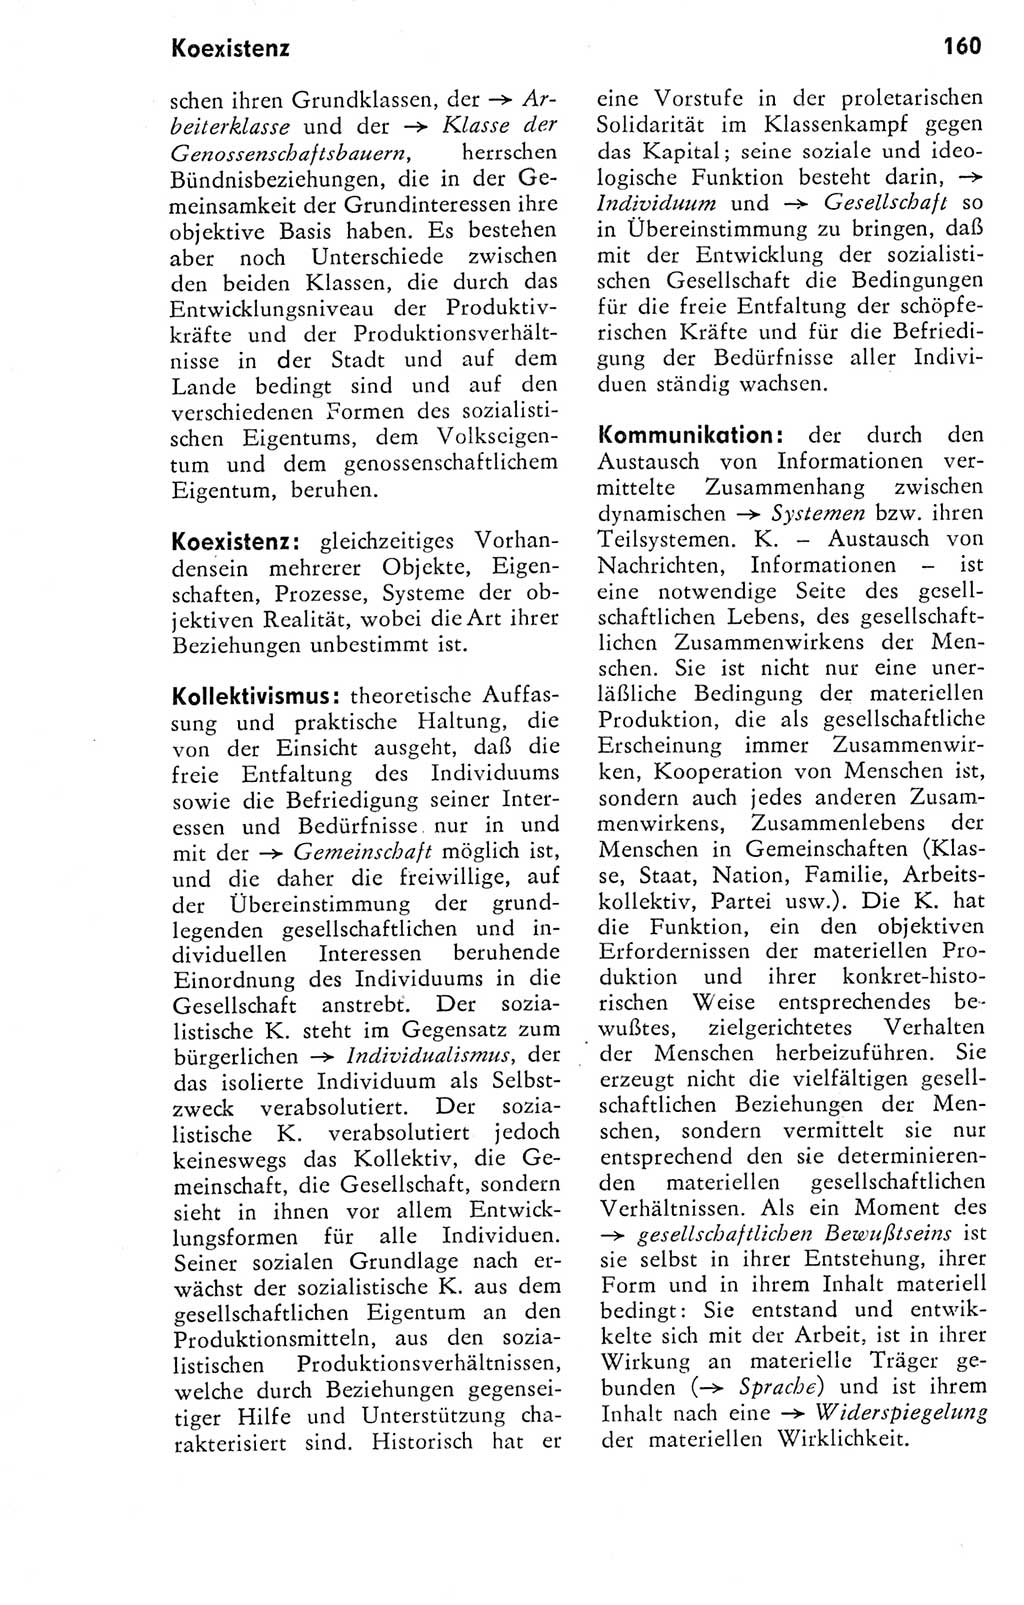 Kleines Wörterbuch der marxistisch-leninistischen Philosophie [Deutsche Demokratische Republik (DDR)] 1974, Seite 160 (Kl. Wb. ML Phil. DDR 1974, S. 160)